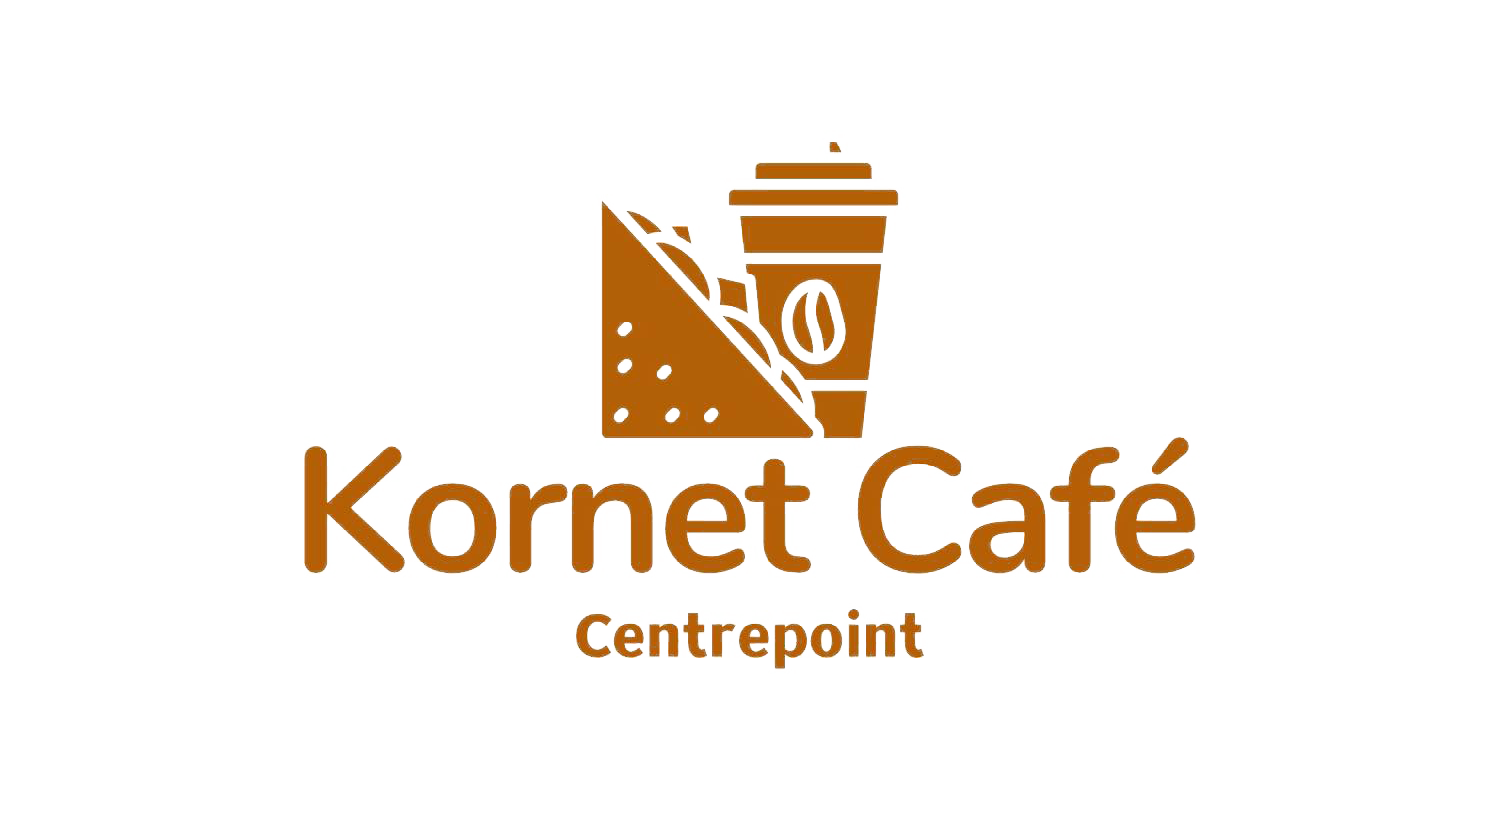 Kornet Café